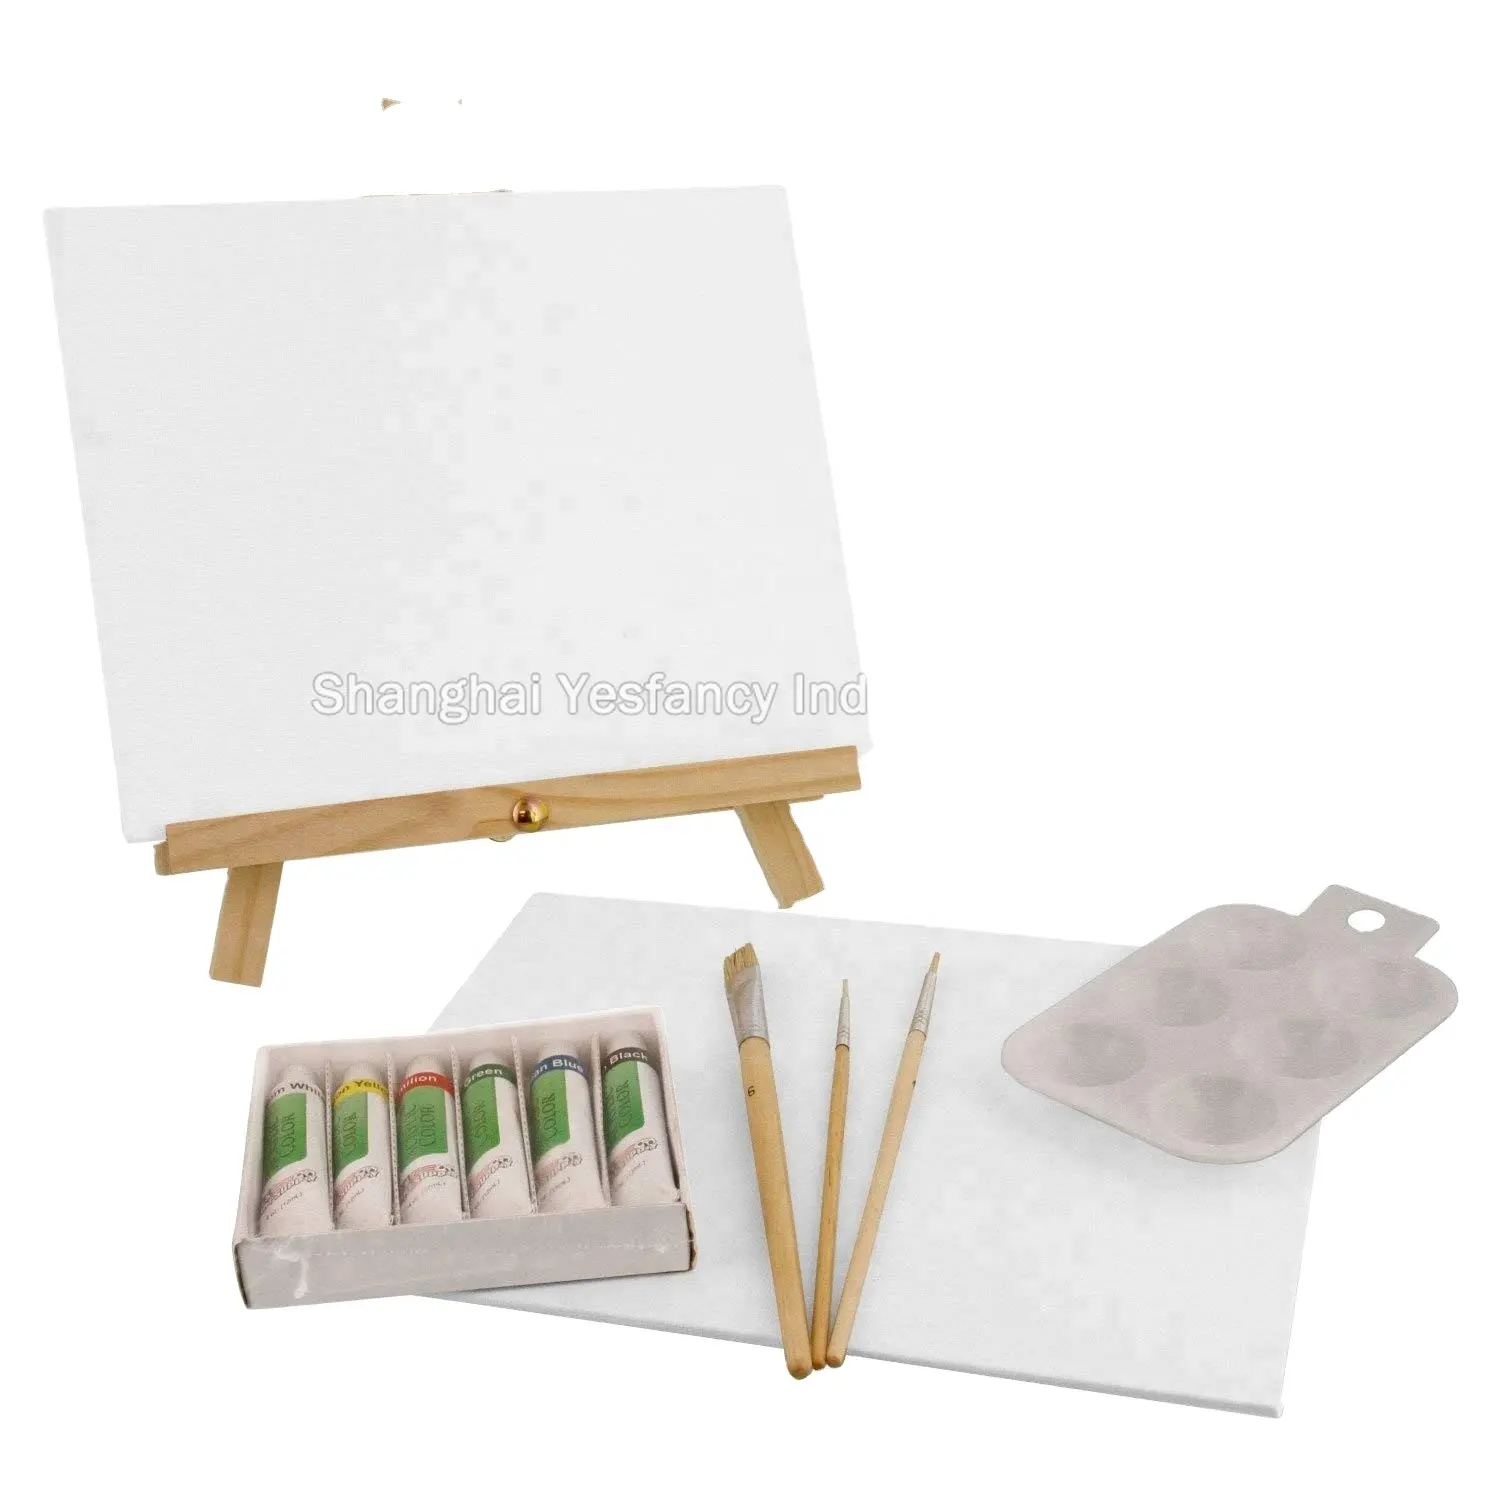 Günstigster Preis Kinder Leinwand Malerei Set benutzer definierte Größe Leinwand Board mit Staffelei Farben und Pinsel